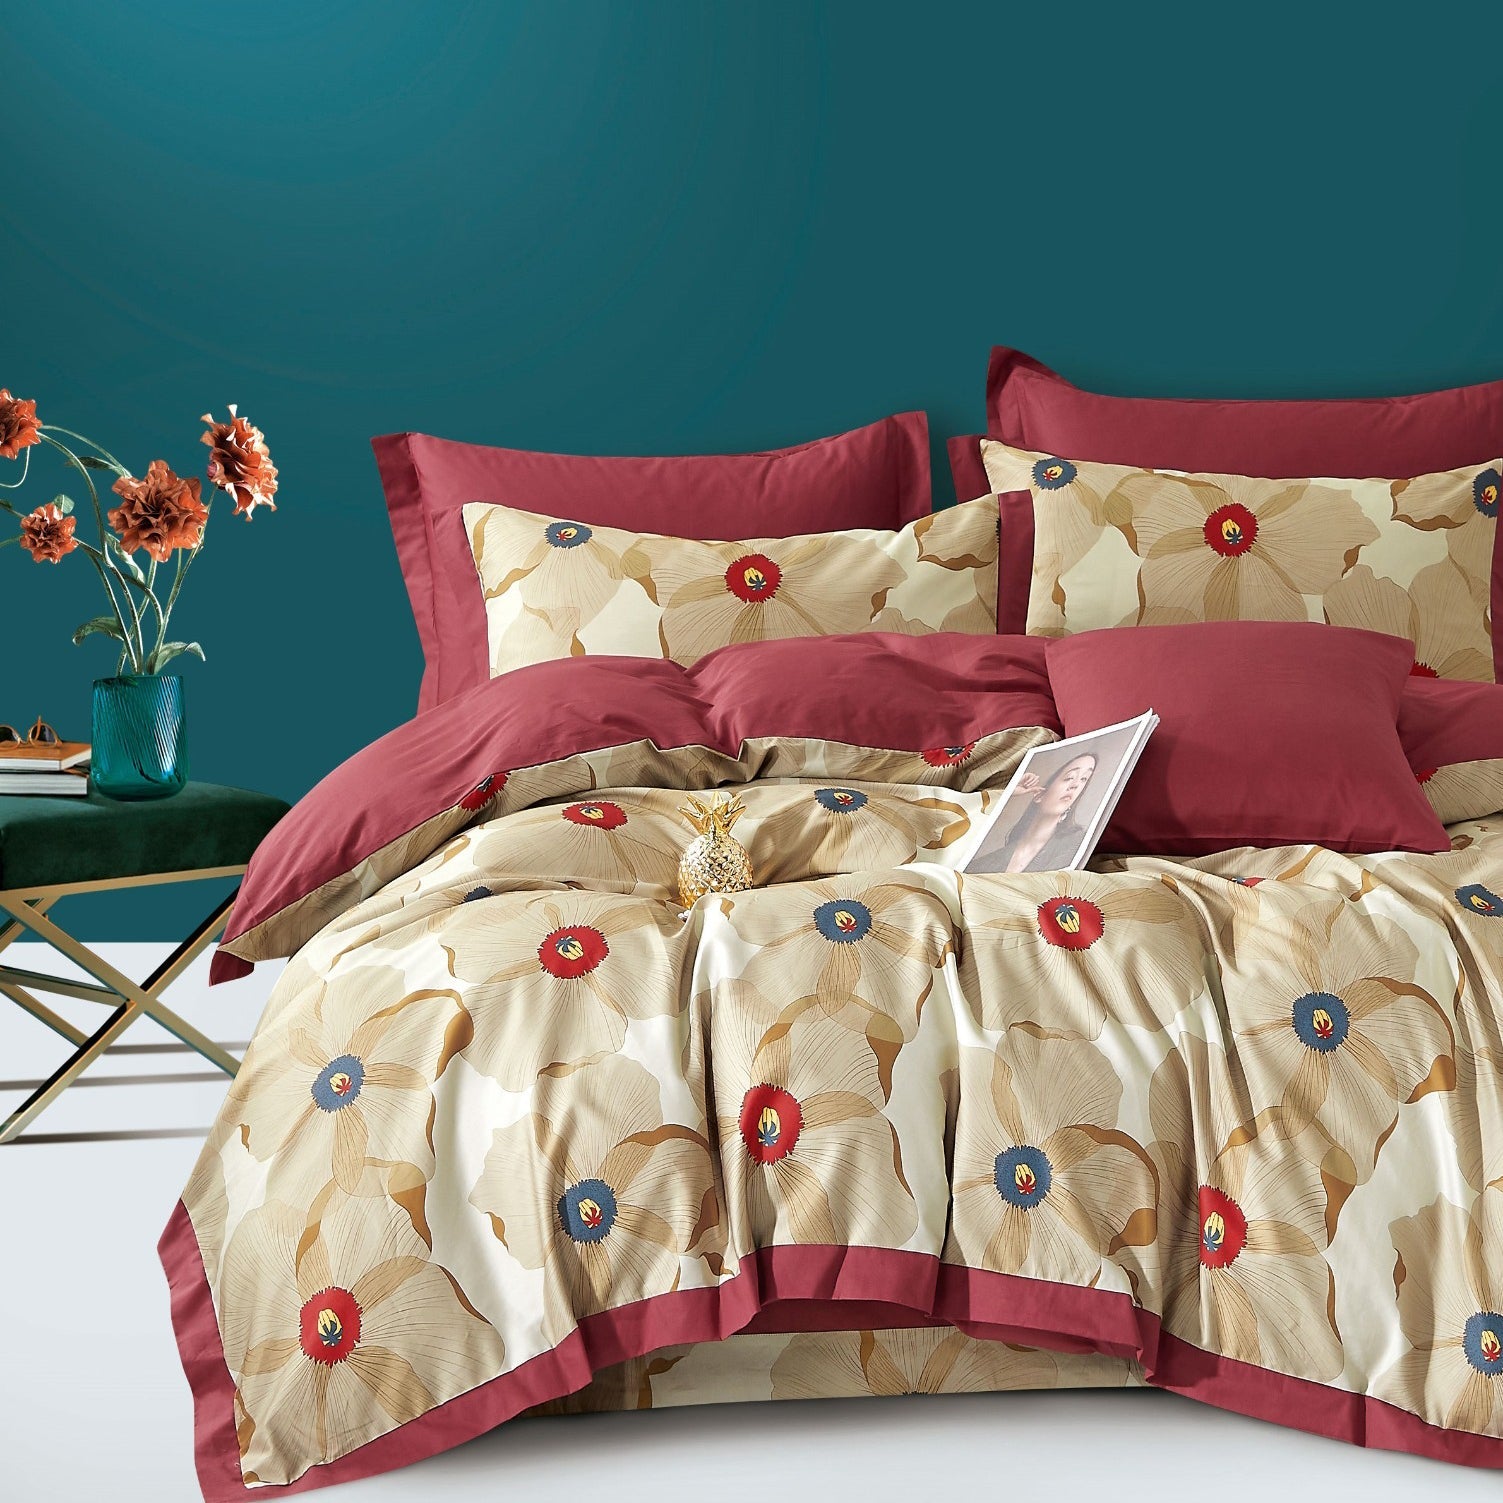 100% Pure Cotton 400 TC King Size Double Bedsheet Digital Print - 275 X 275 CM with 2 Pillow Covers - 3 Pcs Set